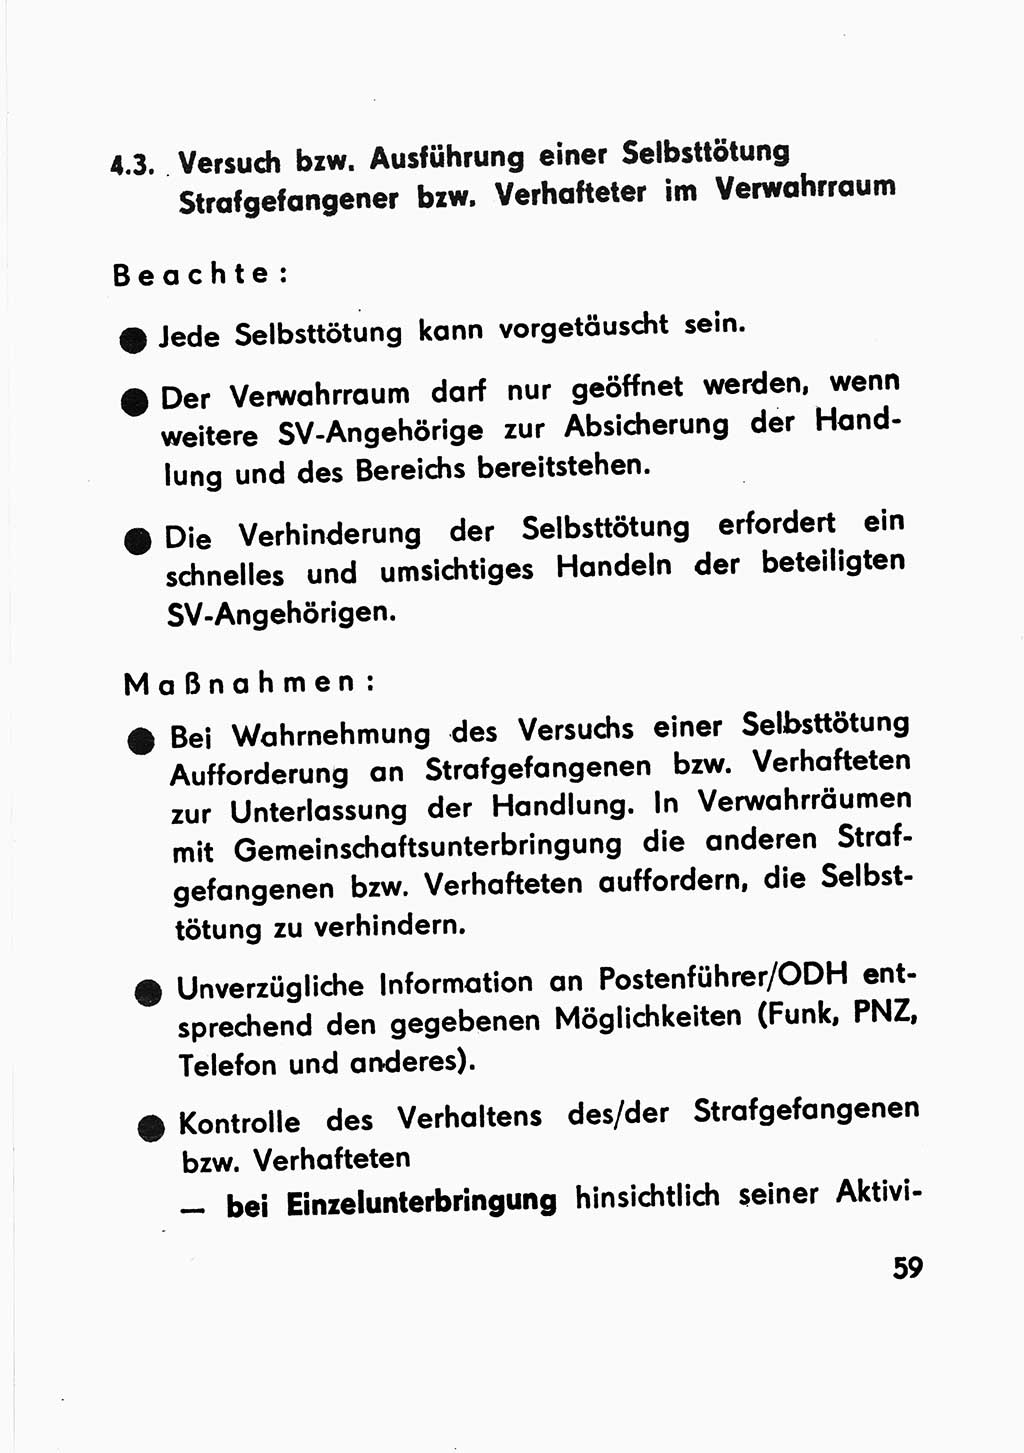 Merkbuch für SV-Angehörige [Strafvollzug (SV) Deutsche Demokratische Republik (DDR)] 1975, Seite 59 (SV-Angeh. DDR 1975, S. 59)